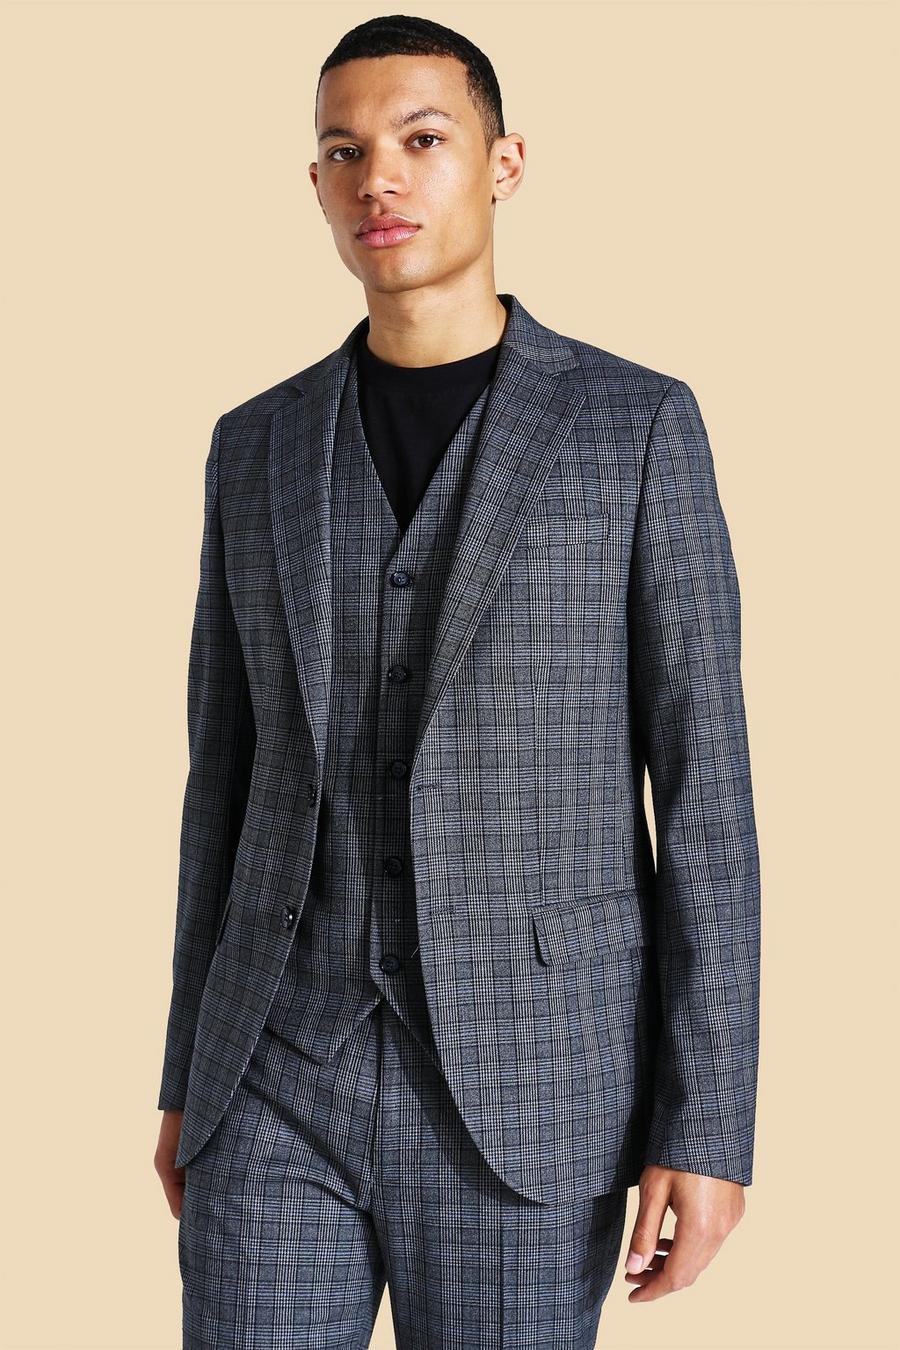 אפור gris ז'קט חליפה בגזרה צרה עם הדפס משבצות ורכיסה אחת לגברים גבוהים